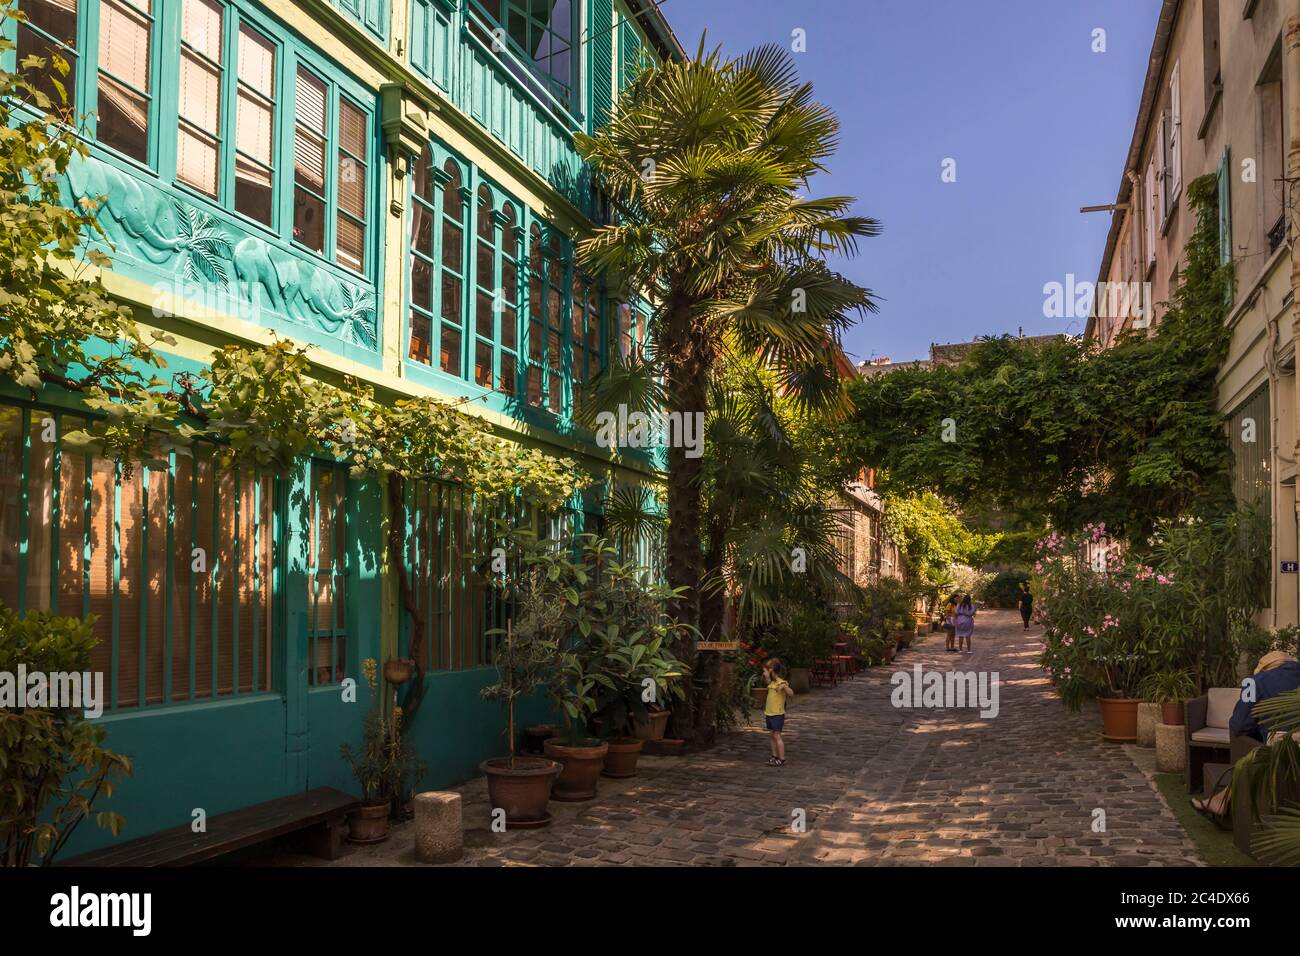 Paris, Francia - 24 de junio de 2020: La calle Figuier con su vegetación en el distrito 11 de París Foto de stock